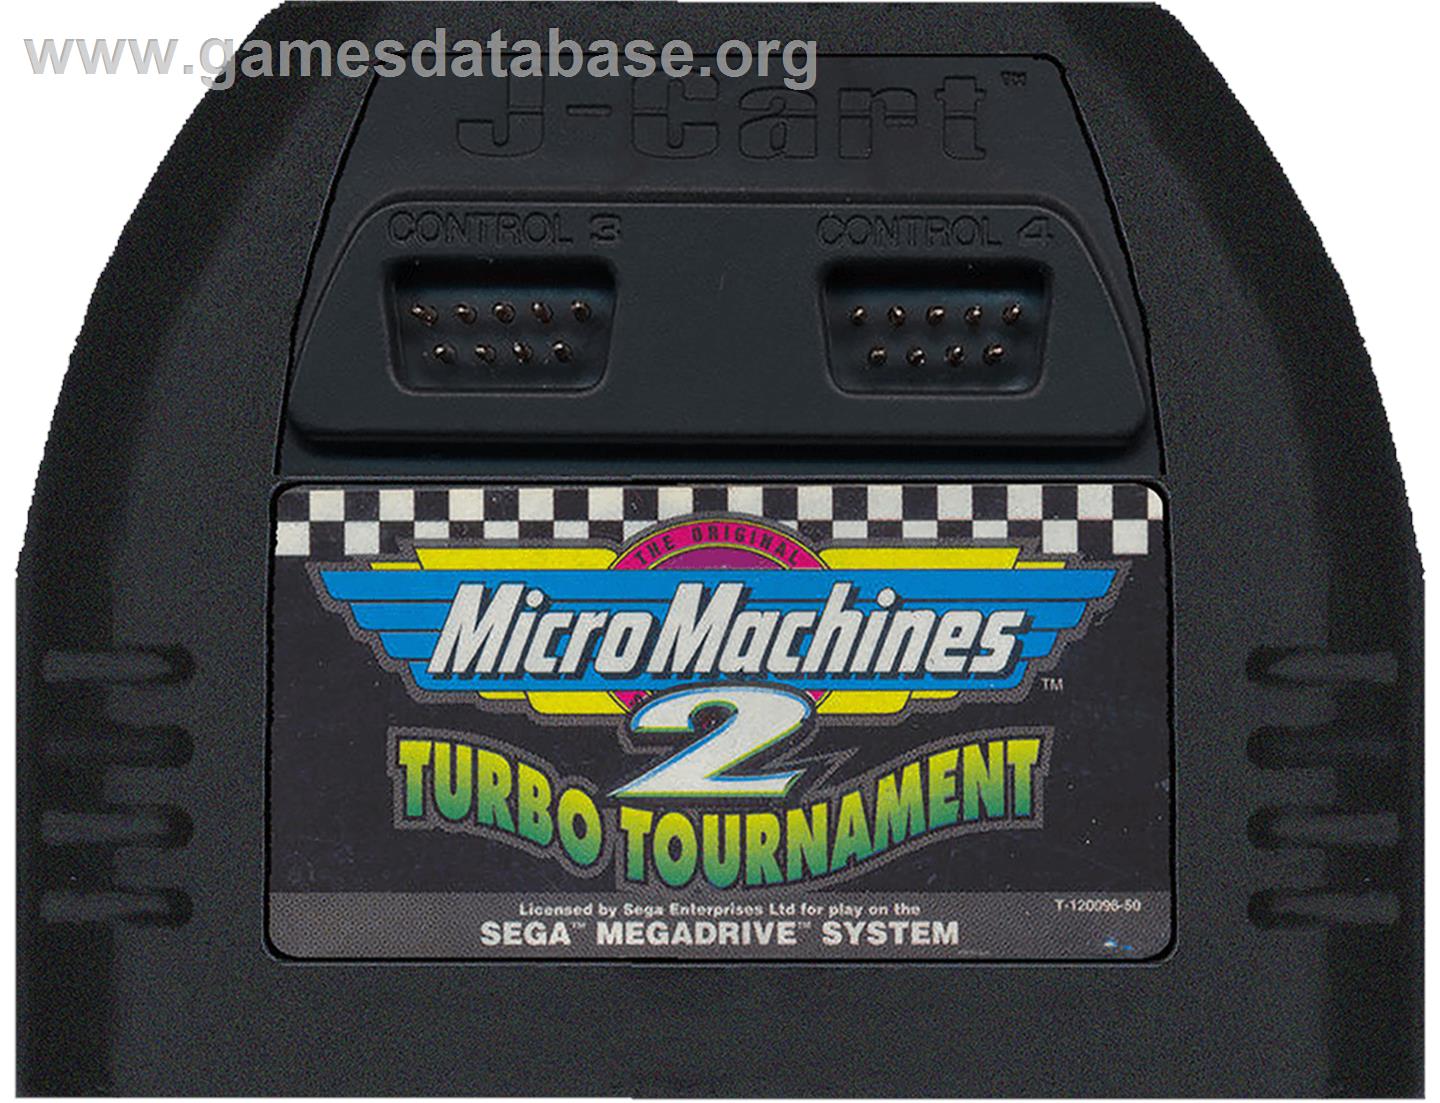 Micro Machines 2: Turbo Tournament - Sega Genesis - Artwork - Cartridge